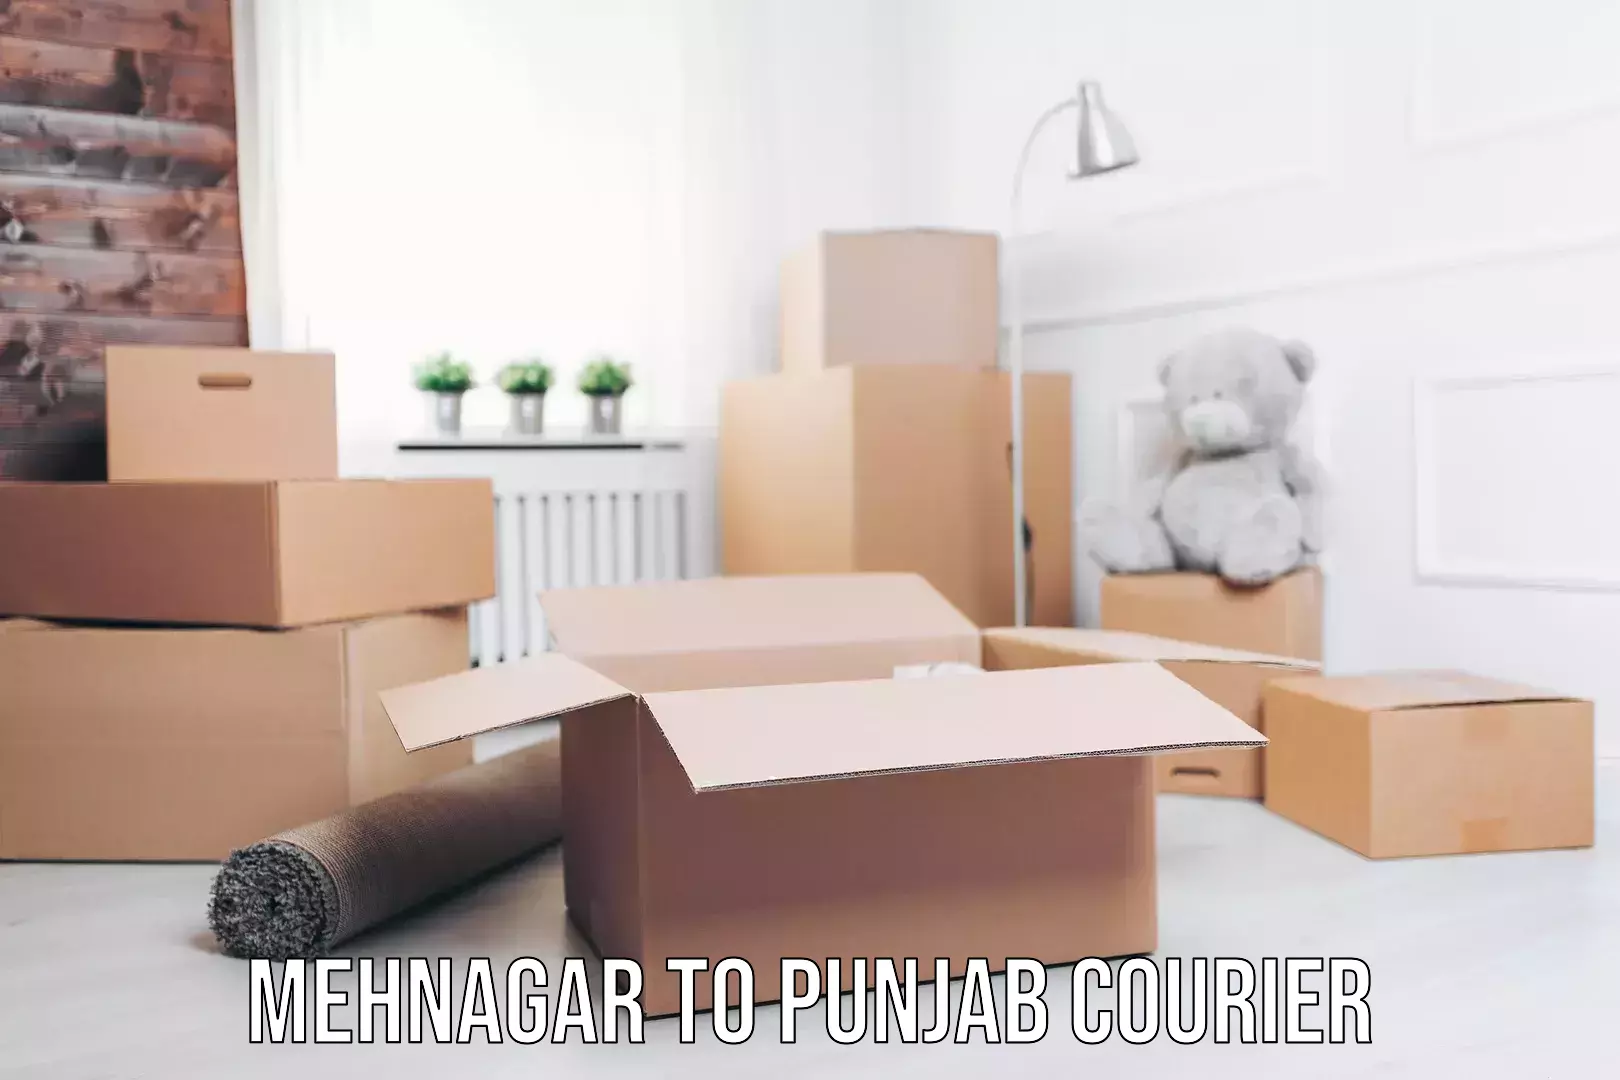 Efficient furniture shifting Mehnagar to Punjab